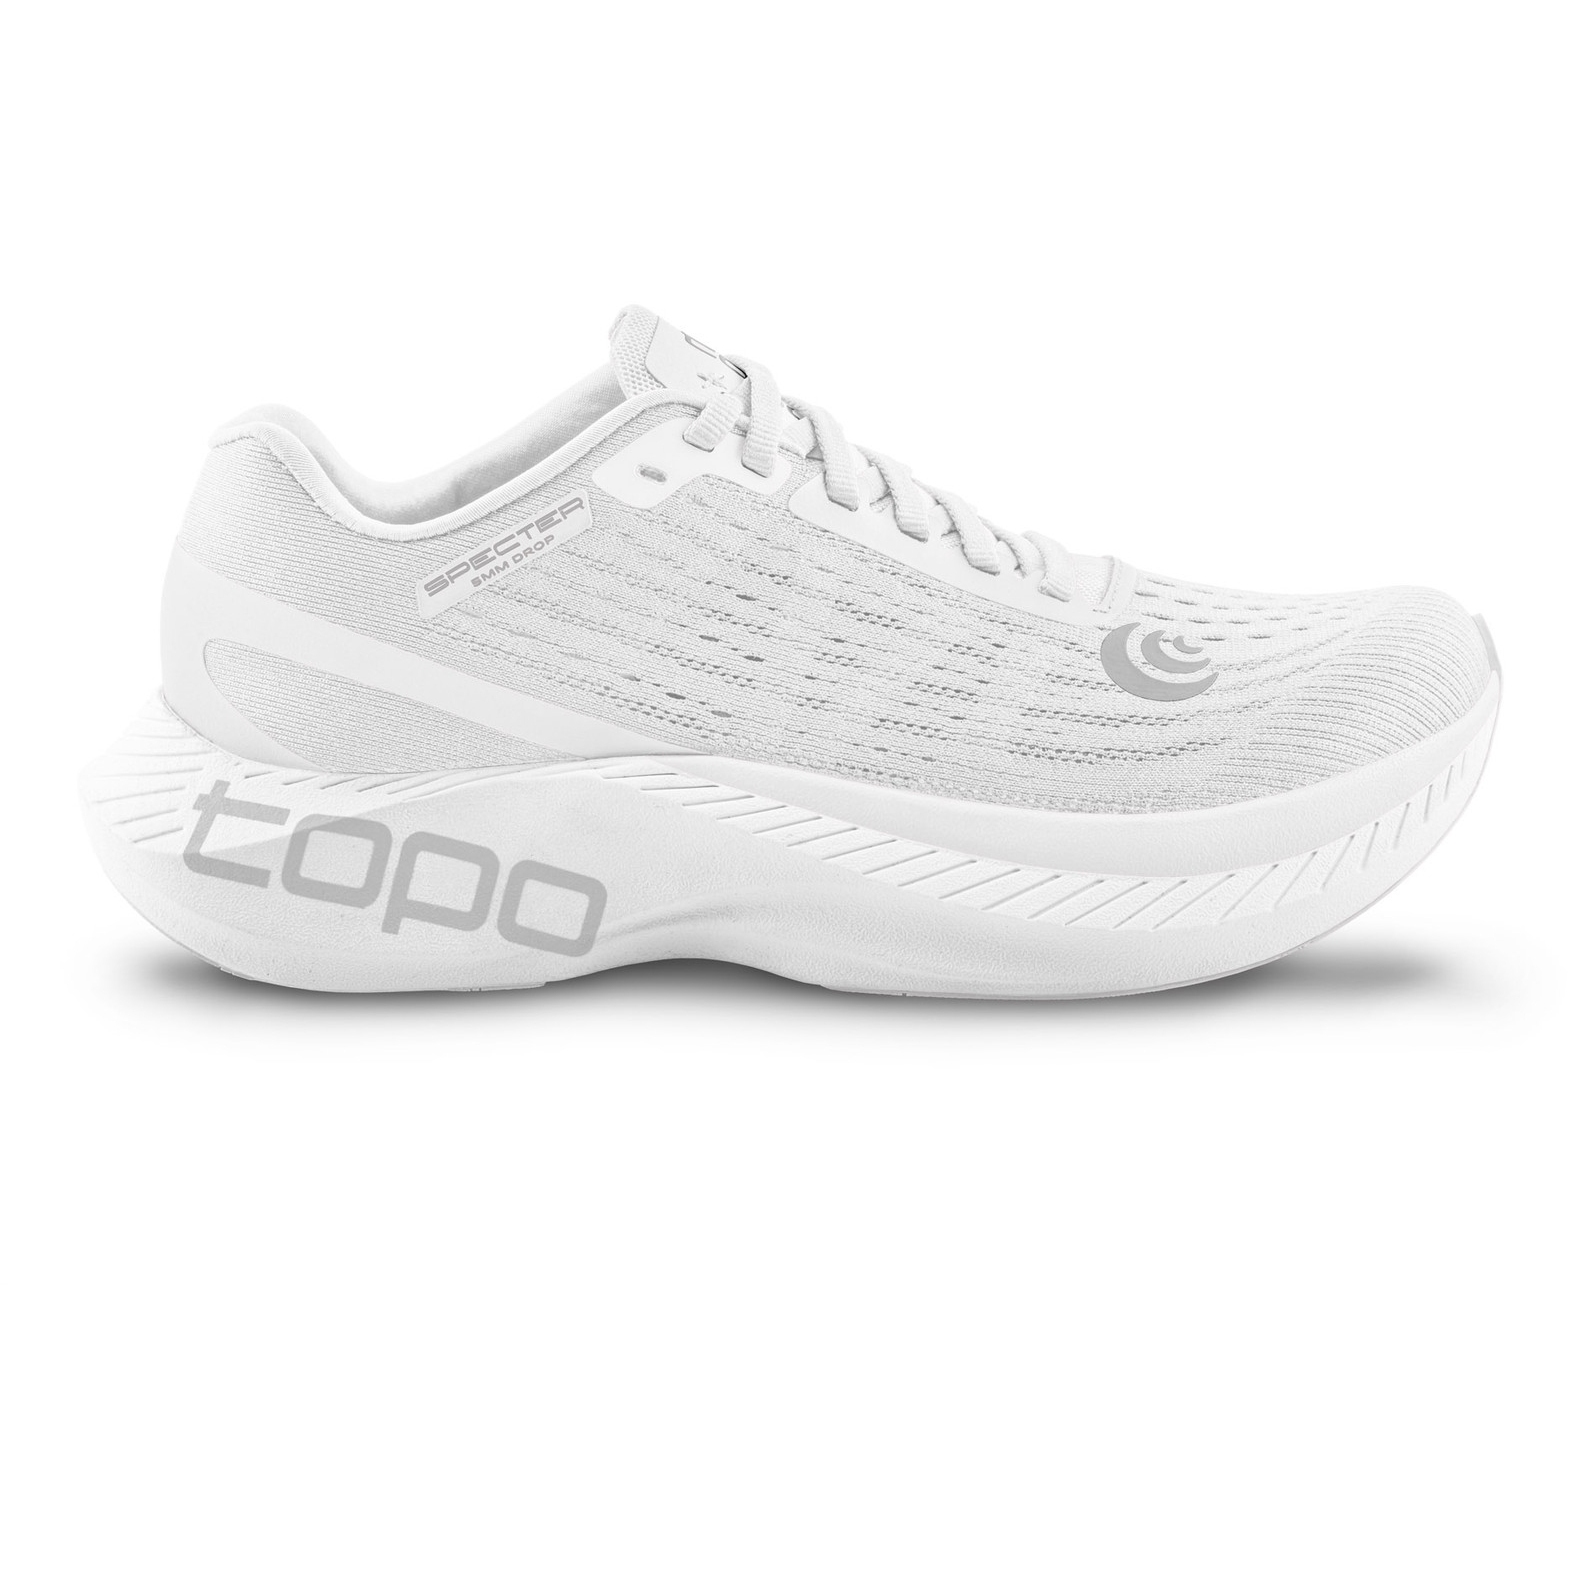 Productfoto van Topo Athletic Specter Heren Hardloopschoenen - wit/grijs